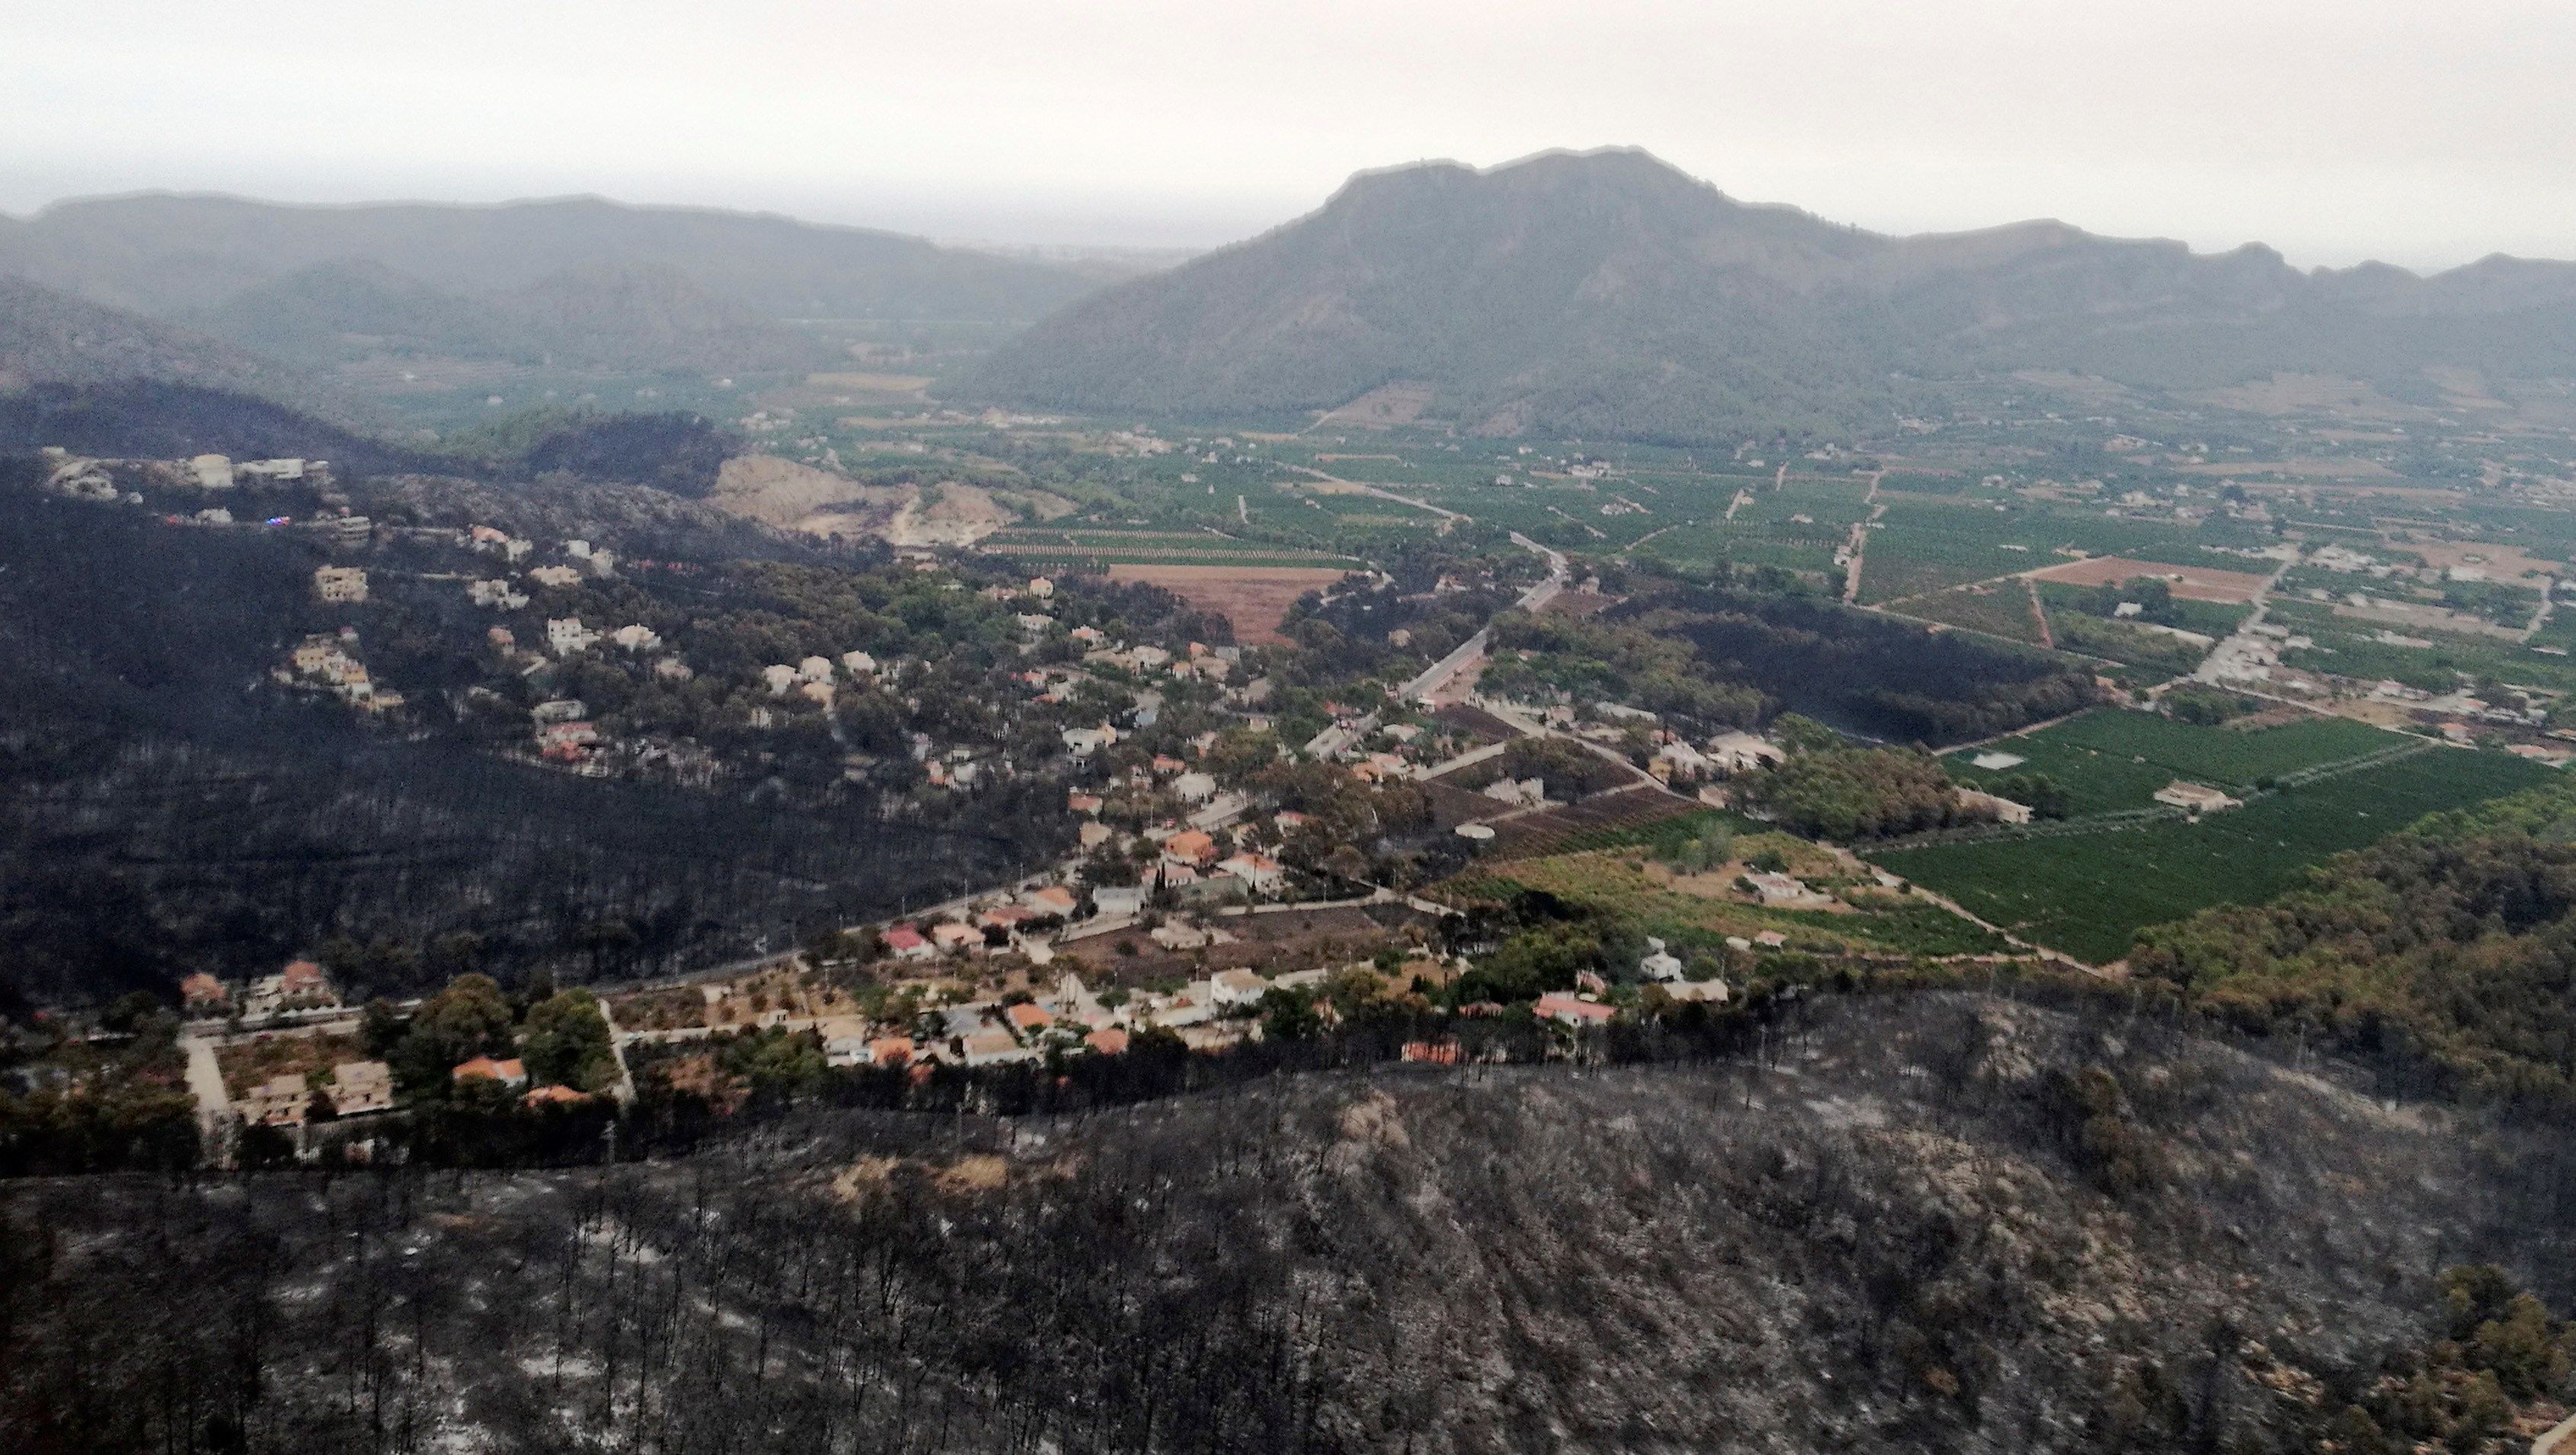 Vista aérea de la zona afectada por el incendio en Llutxent - Fotografía facilitada por la UME